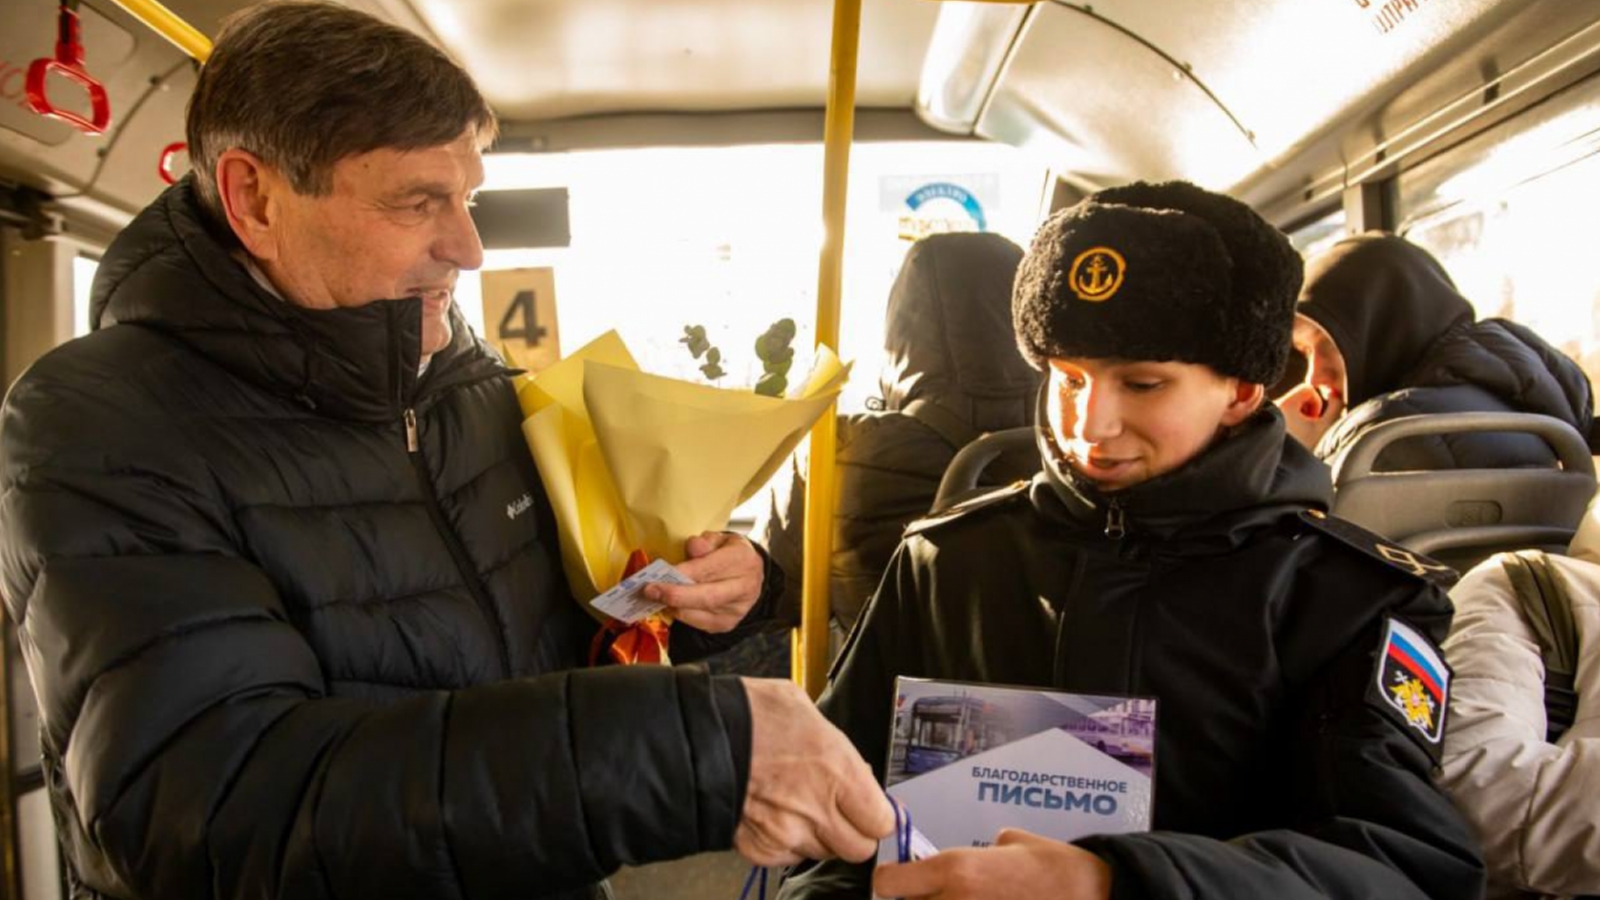 Коробков: Число пассажиров общественного транспорта в Мурманске ежегодно вырастает на два миллиона